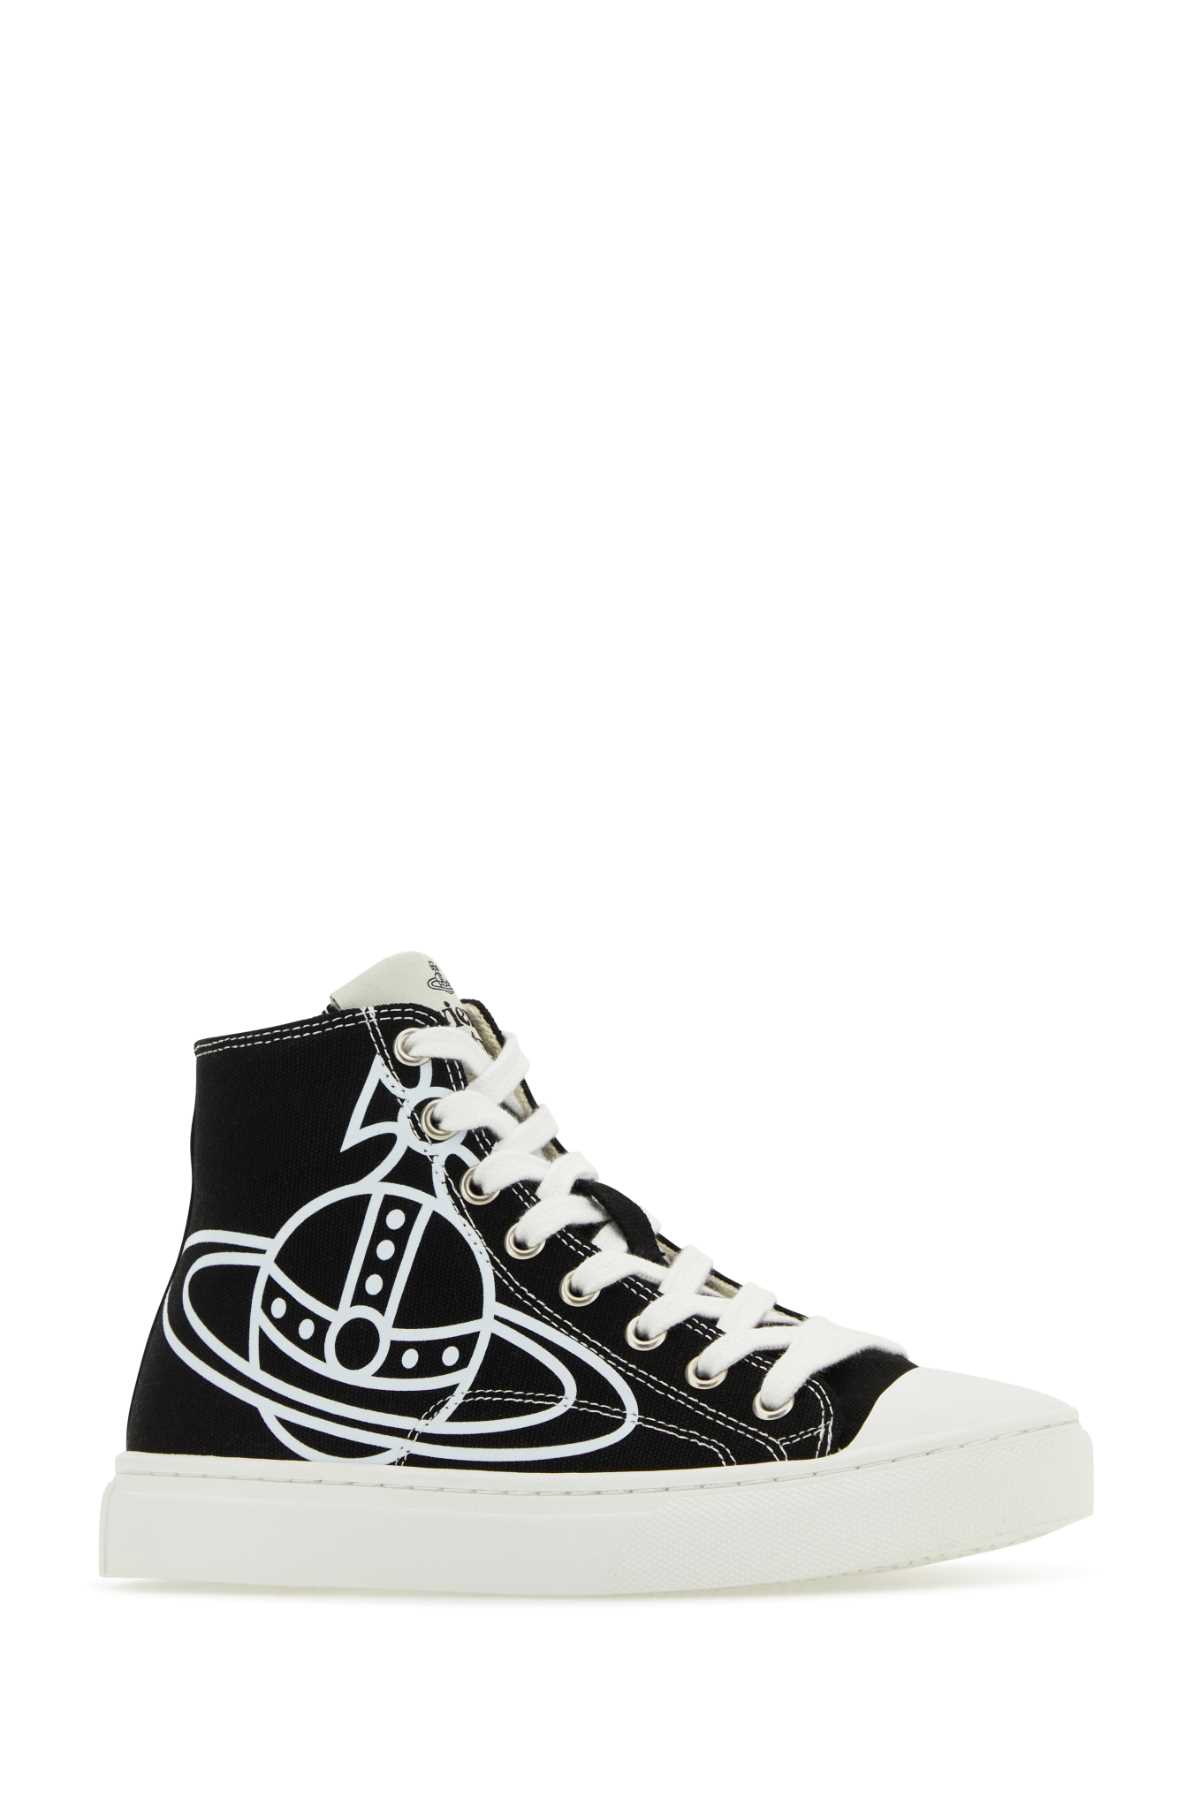 Shop Vivienne Westwood Black Canvas Plimsoll Sneakers In N401